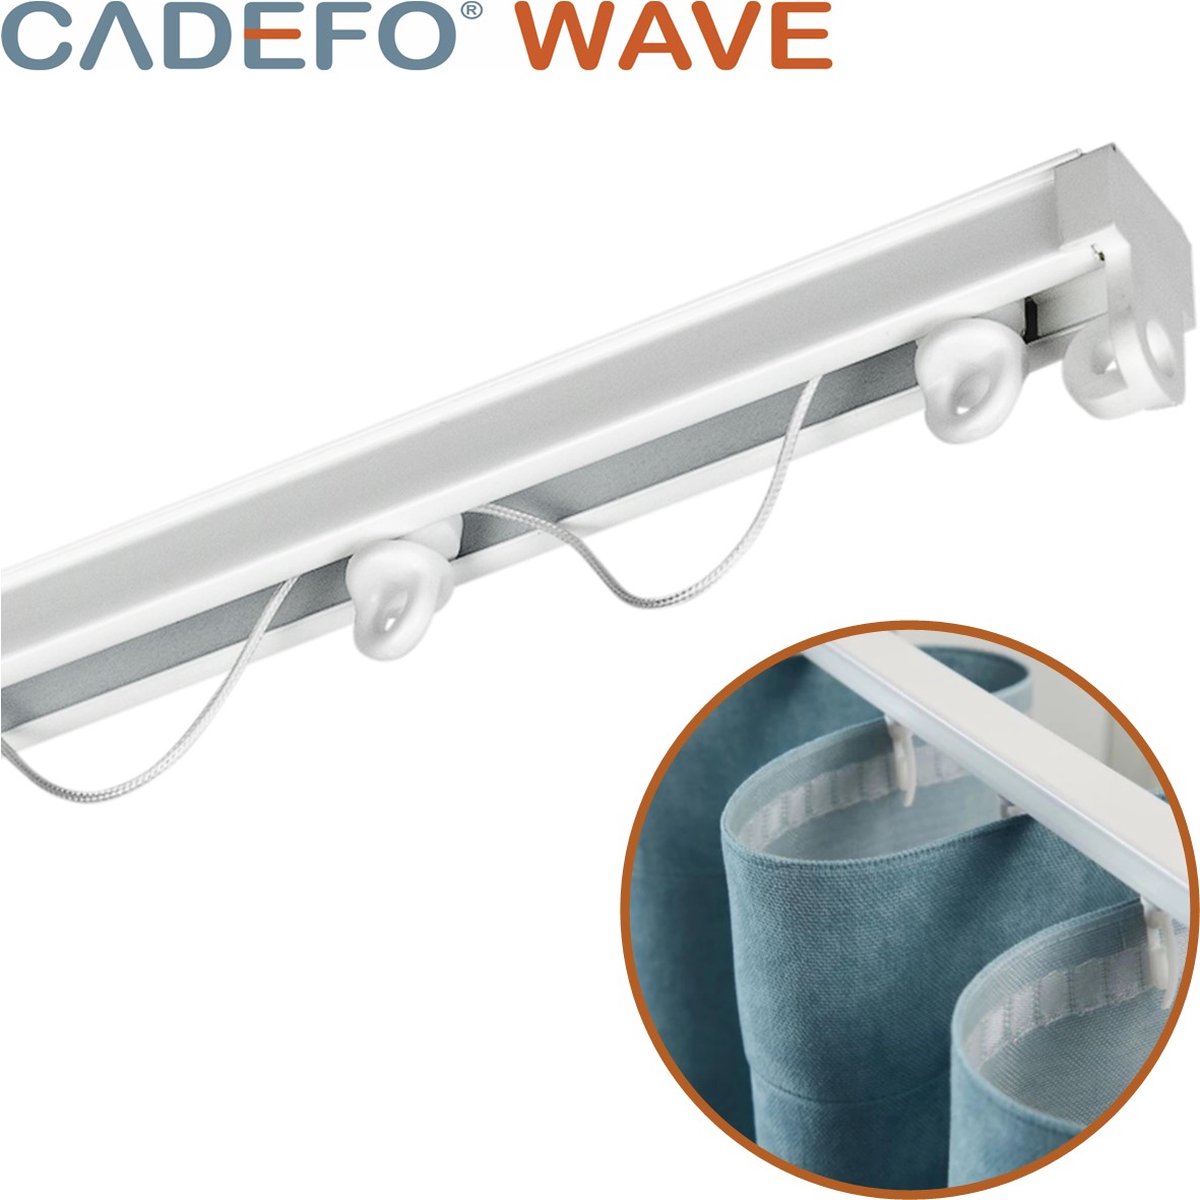 CADEFO WAVE (401 - 450 cm) Gordijnrails - Compleet op maat! - UIT 1 STUK - Leverbaar tot 6 meter - Plafondbevestiging - Lengte 443 cm